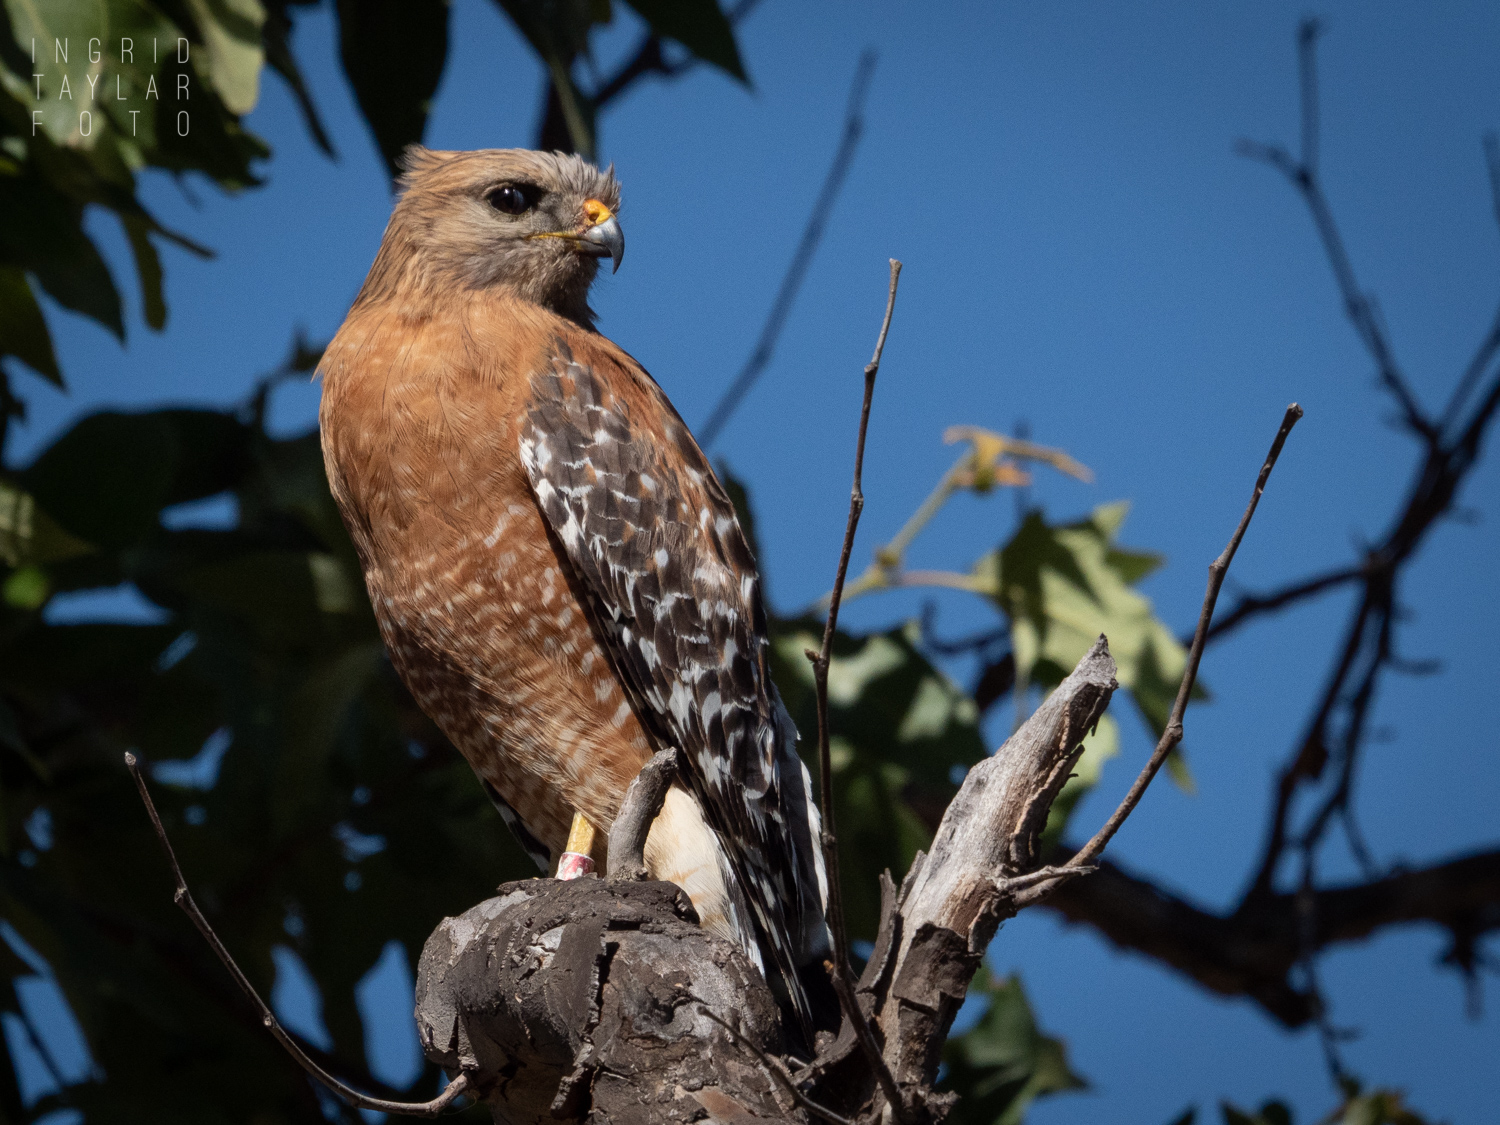 Banded Red-Shouldered Hawk in Irvine Regional Park